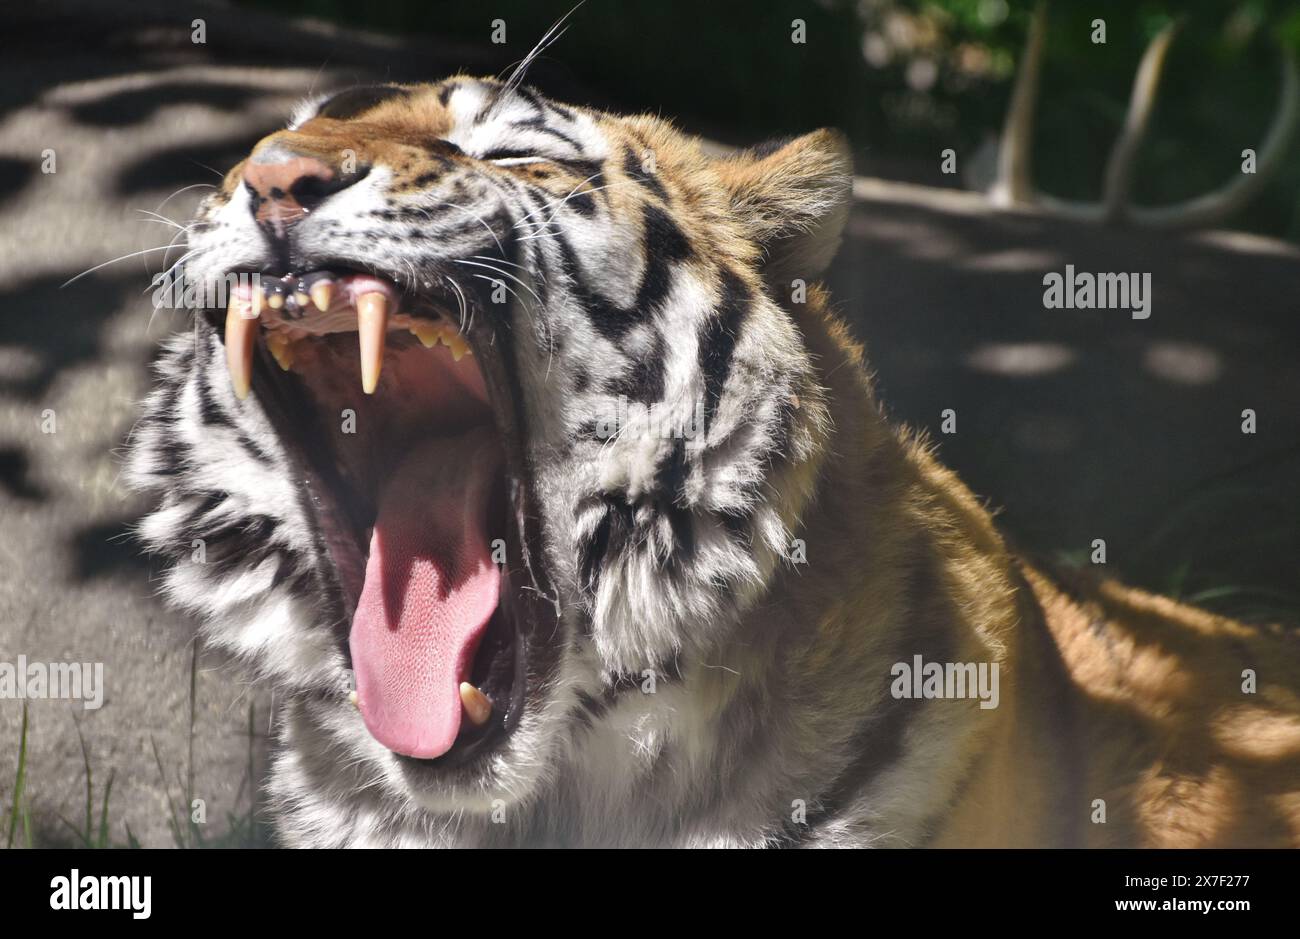 Porträt eines Tigers (Panthera tigris), der brüllt und seine Zähne zeigt Stockfoto